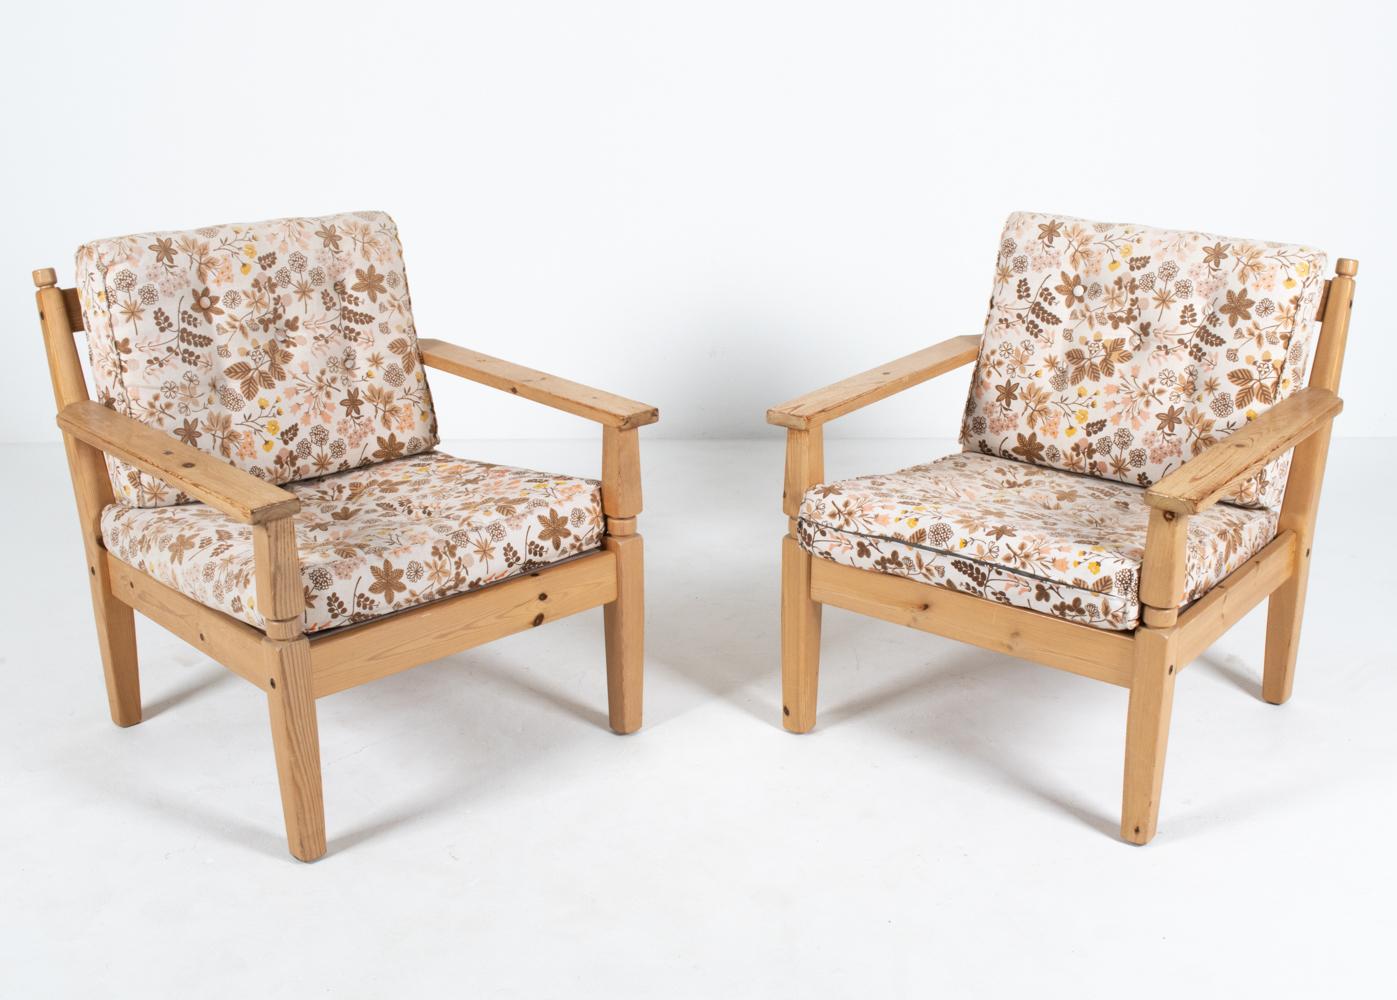 Mariage inhabituel et désirable du brutalisme scandinave et du design de ferme provinciale, ces chaises de salon danoises sont dotées d'une structure en pin massif, d'accoudoirs plats et de tournures minimales, un mélange inhabituel d'esthétique qui